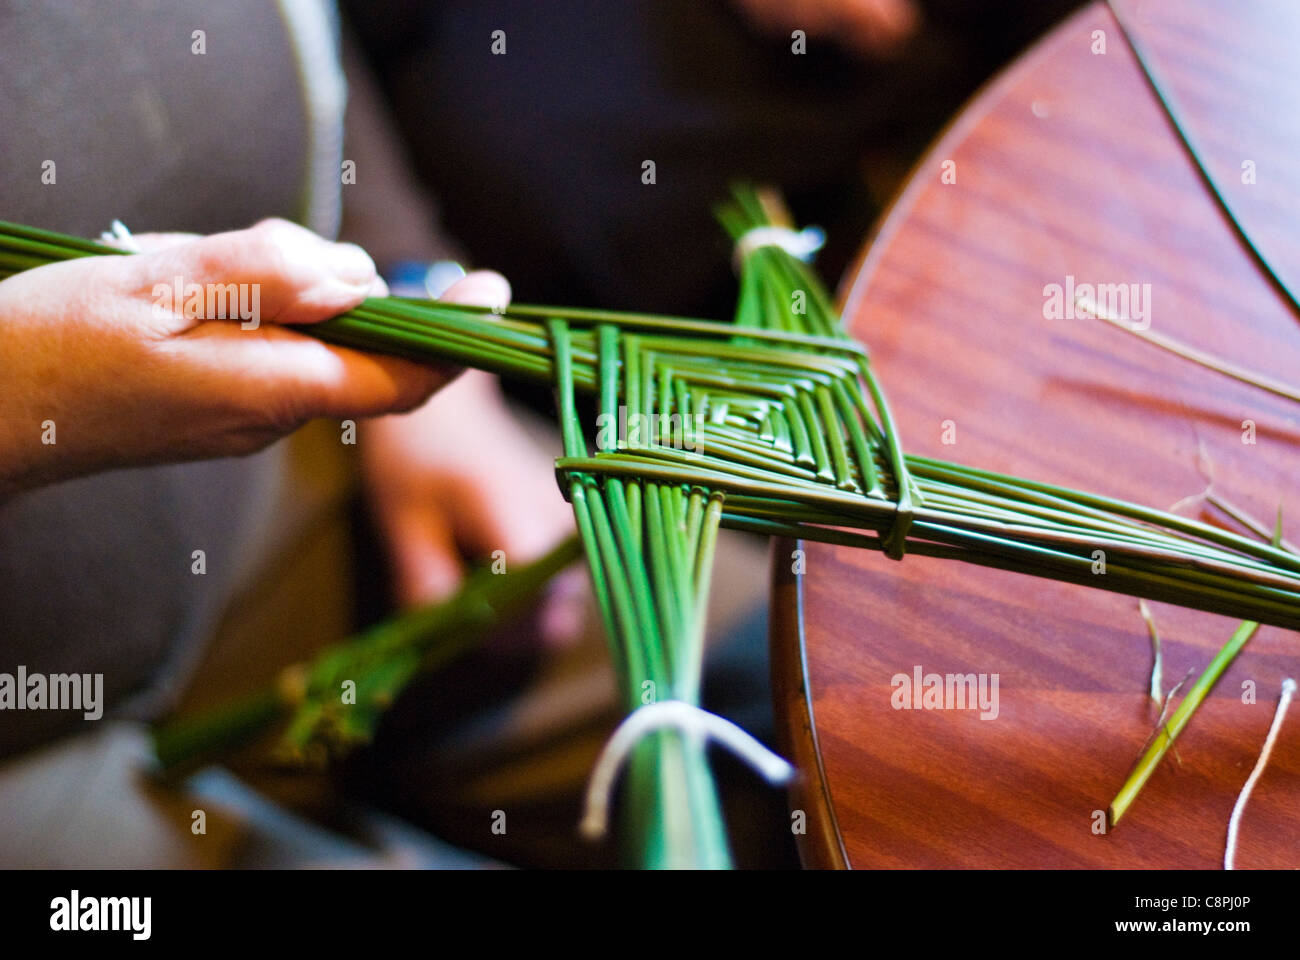 Faire une croix de Saint Brigid's est l'un des rituels traditionnels en Irlande pour célébrer le début du début du printemps, le 1er février Banque D'Images